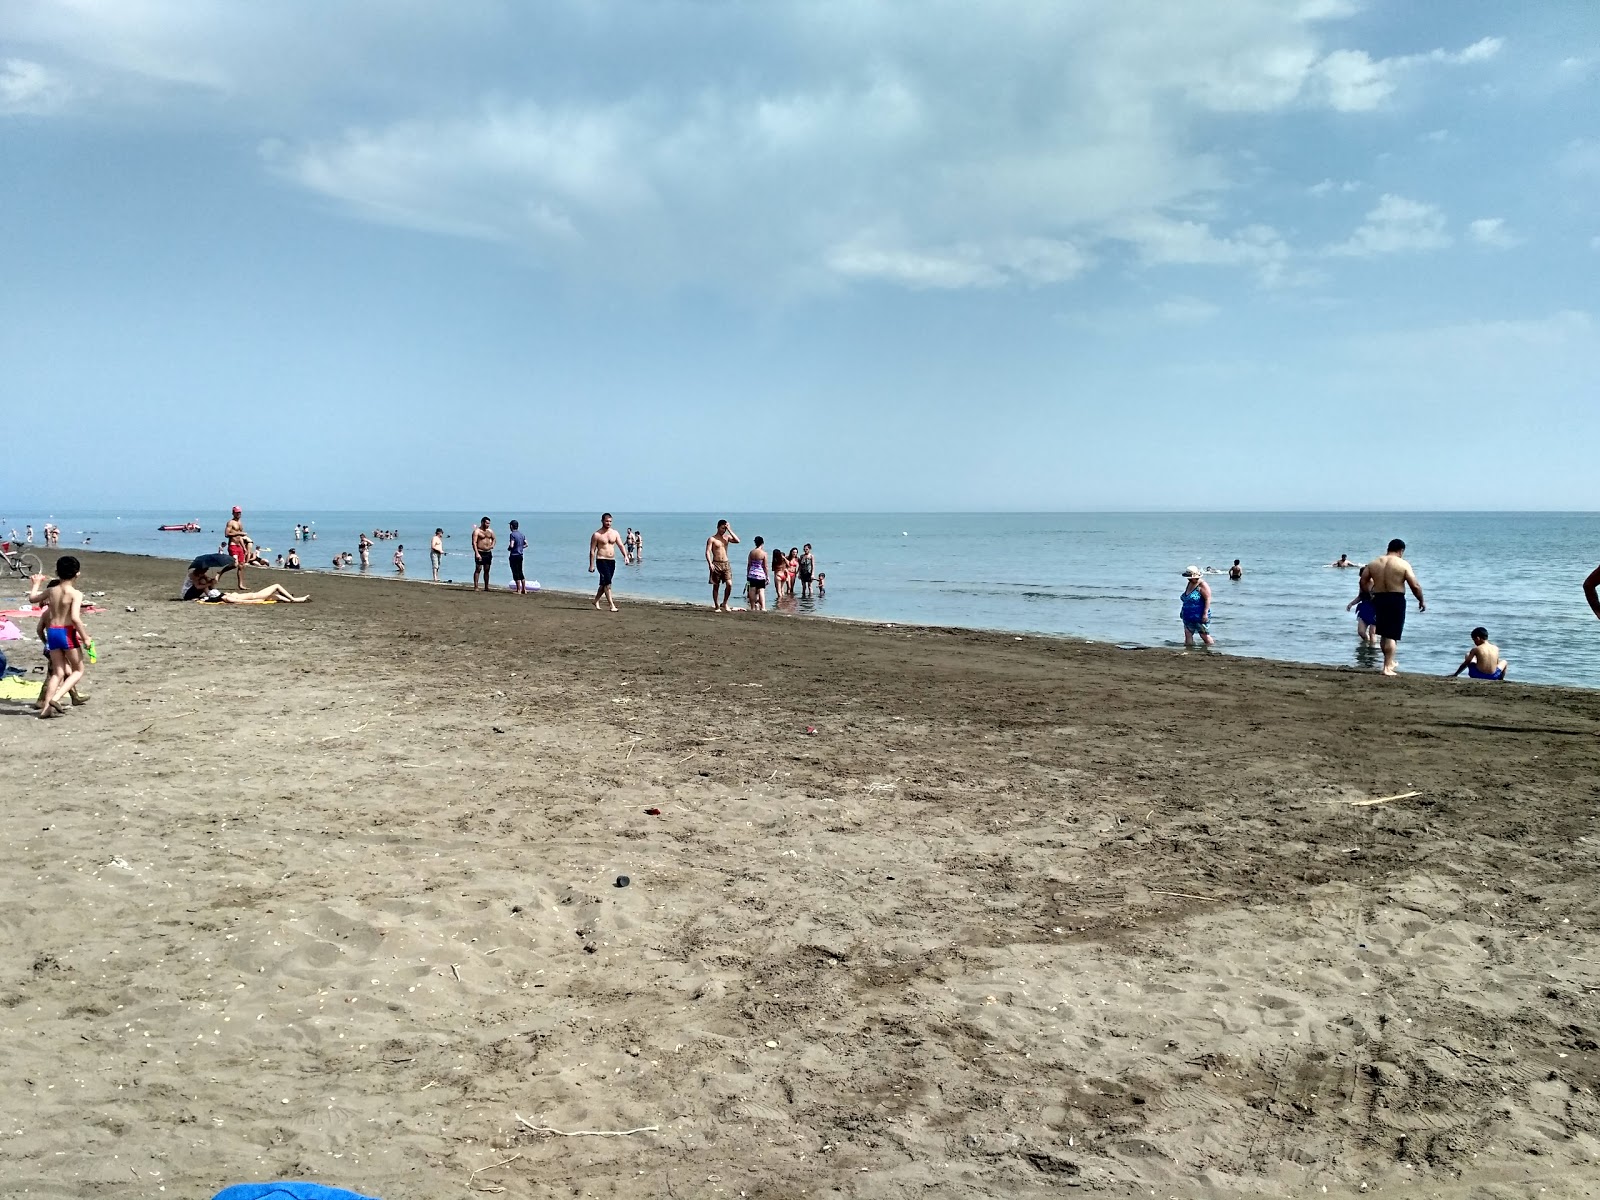 Fotografie cu Plazh Muhtadir cu o suprafață de nisip gri